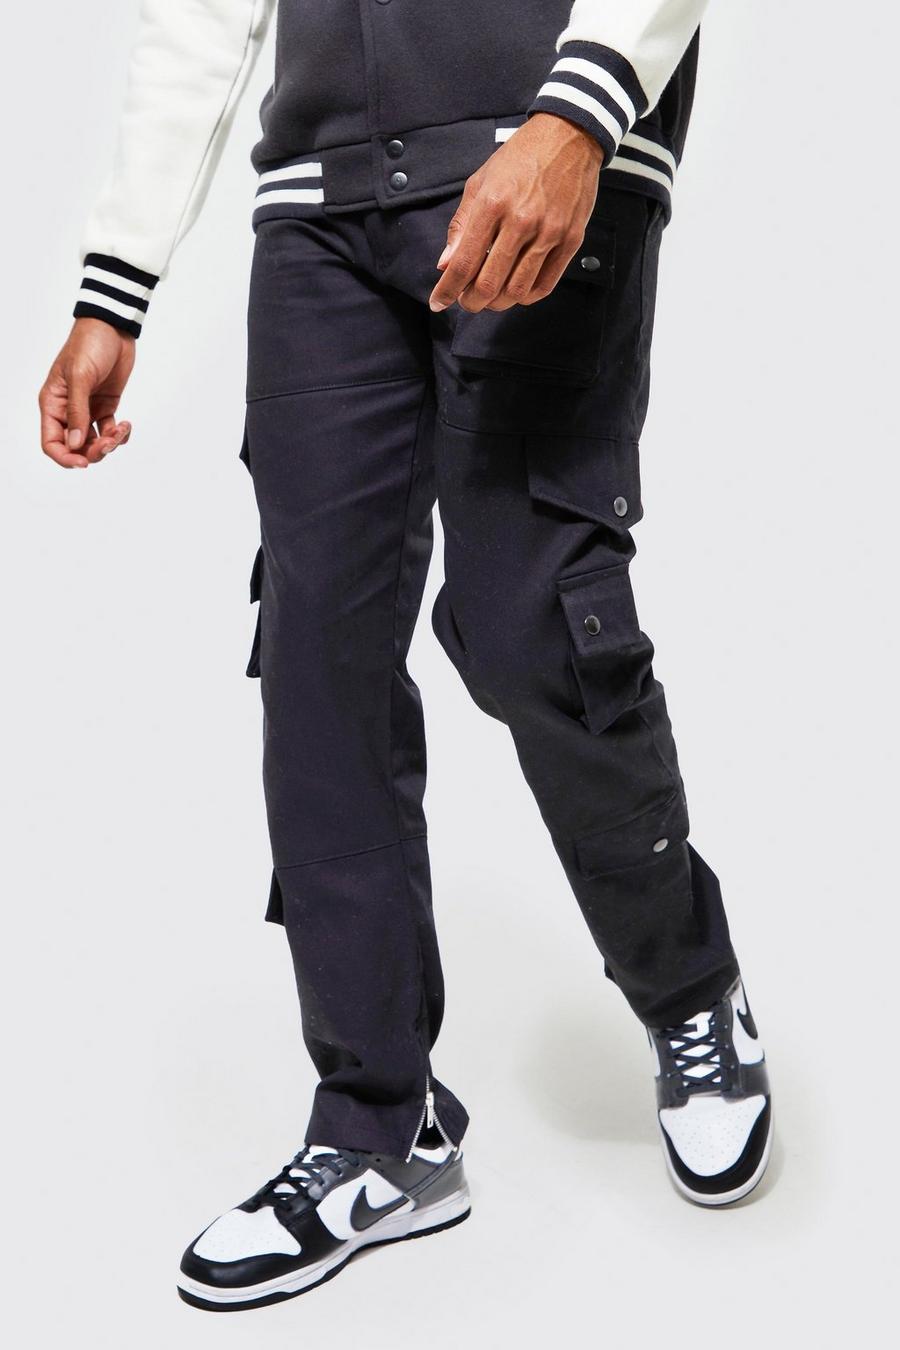 שחור negro מכנסי דגמ'ח בגזרה משוחררת עם רצועת מותניים מהודקת